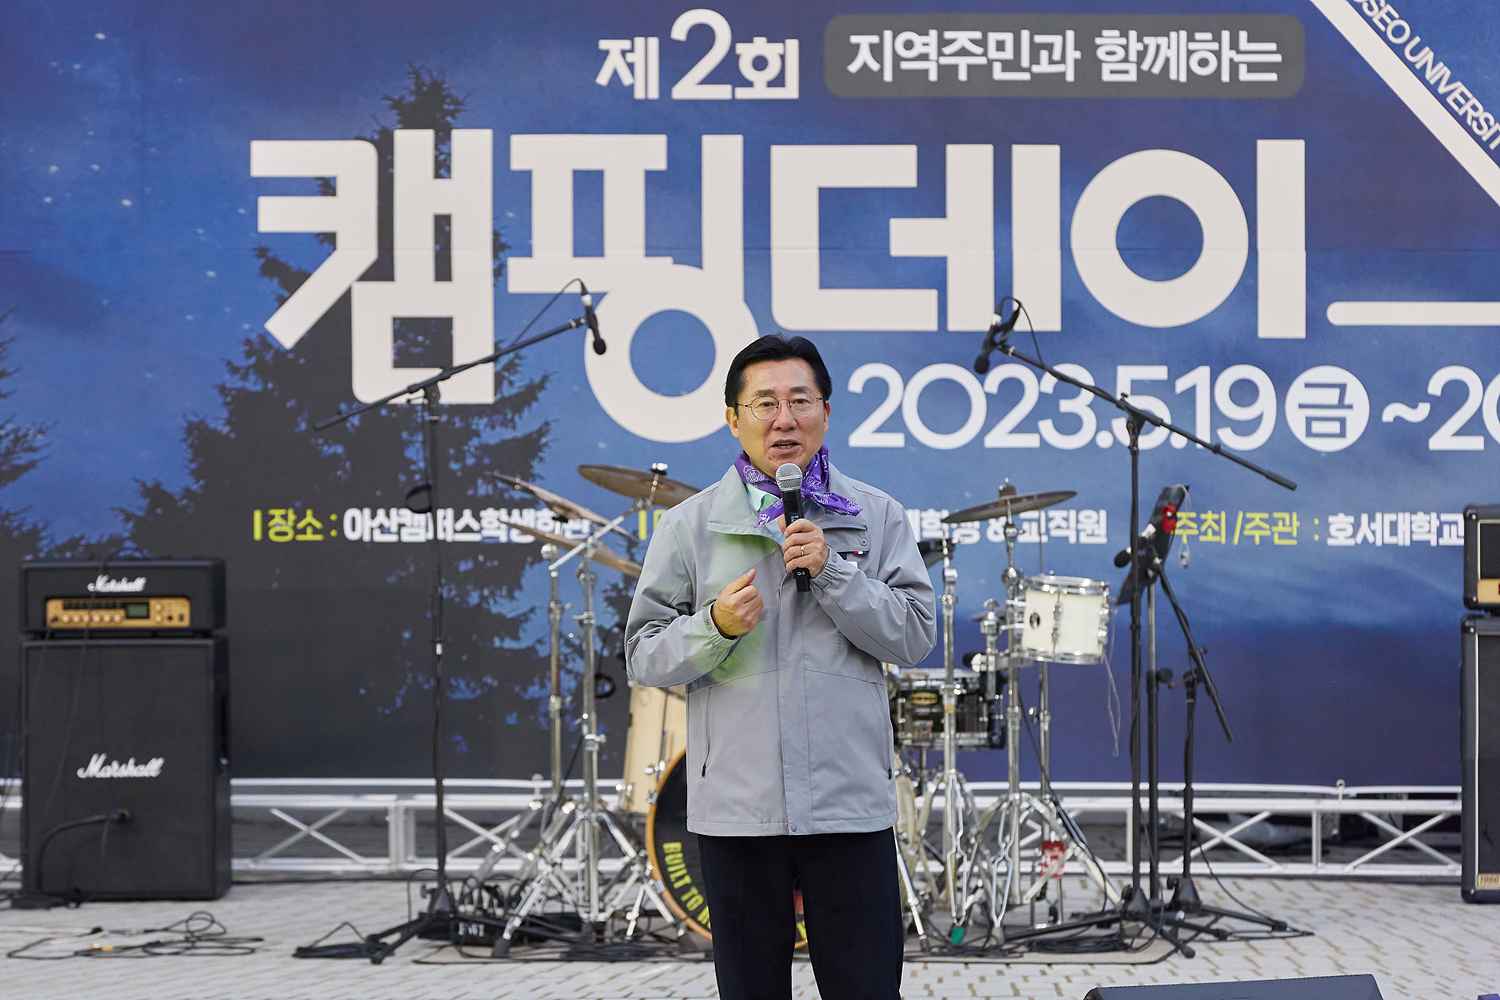 박경귀아산시장, ‘캠핑데이’ 참여..“지역의 다양한 공간, 시민과 함께하는 ‘공동 공간’ 활용 필요”강조 관련사진